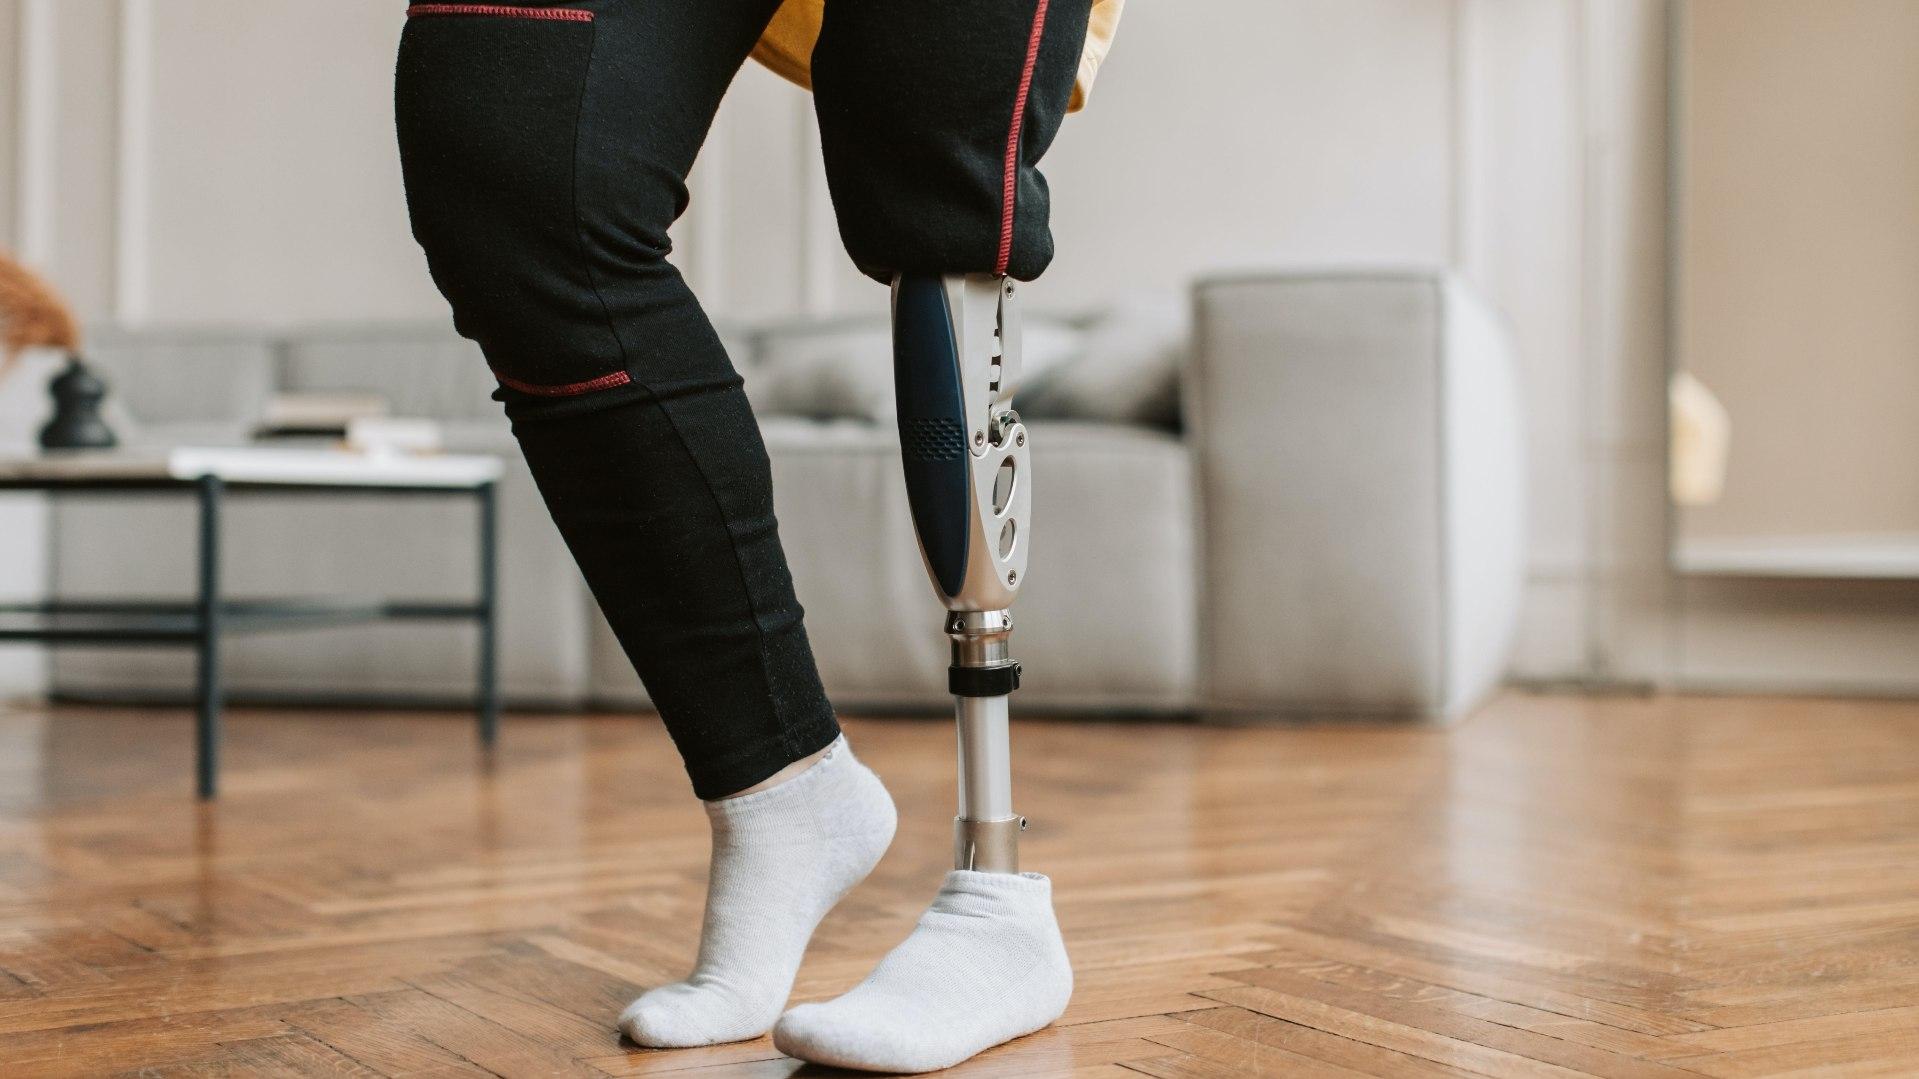 Donarán Prótesis de Piernas a Personas con Discapacidad en Tijuana